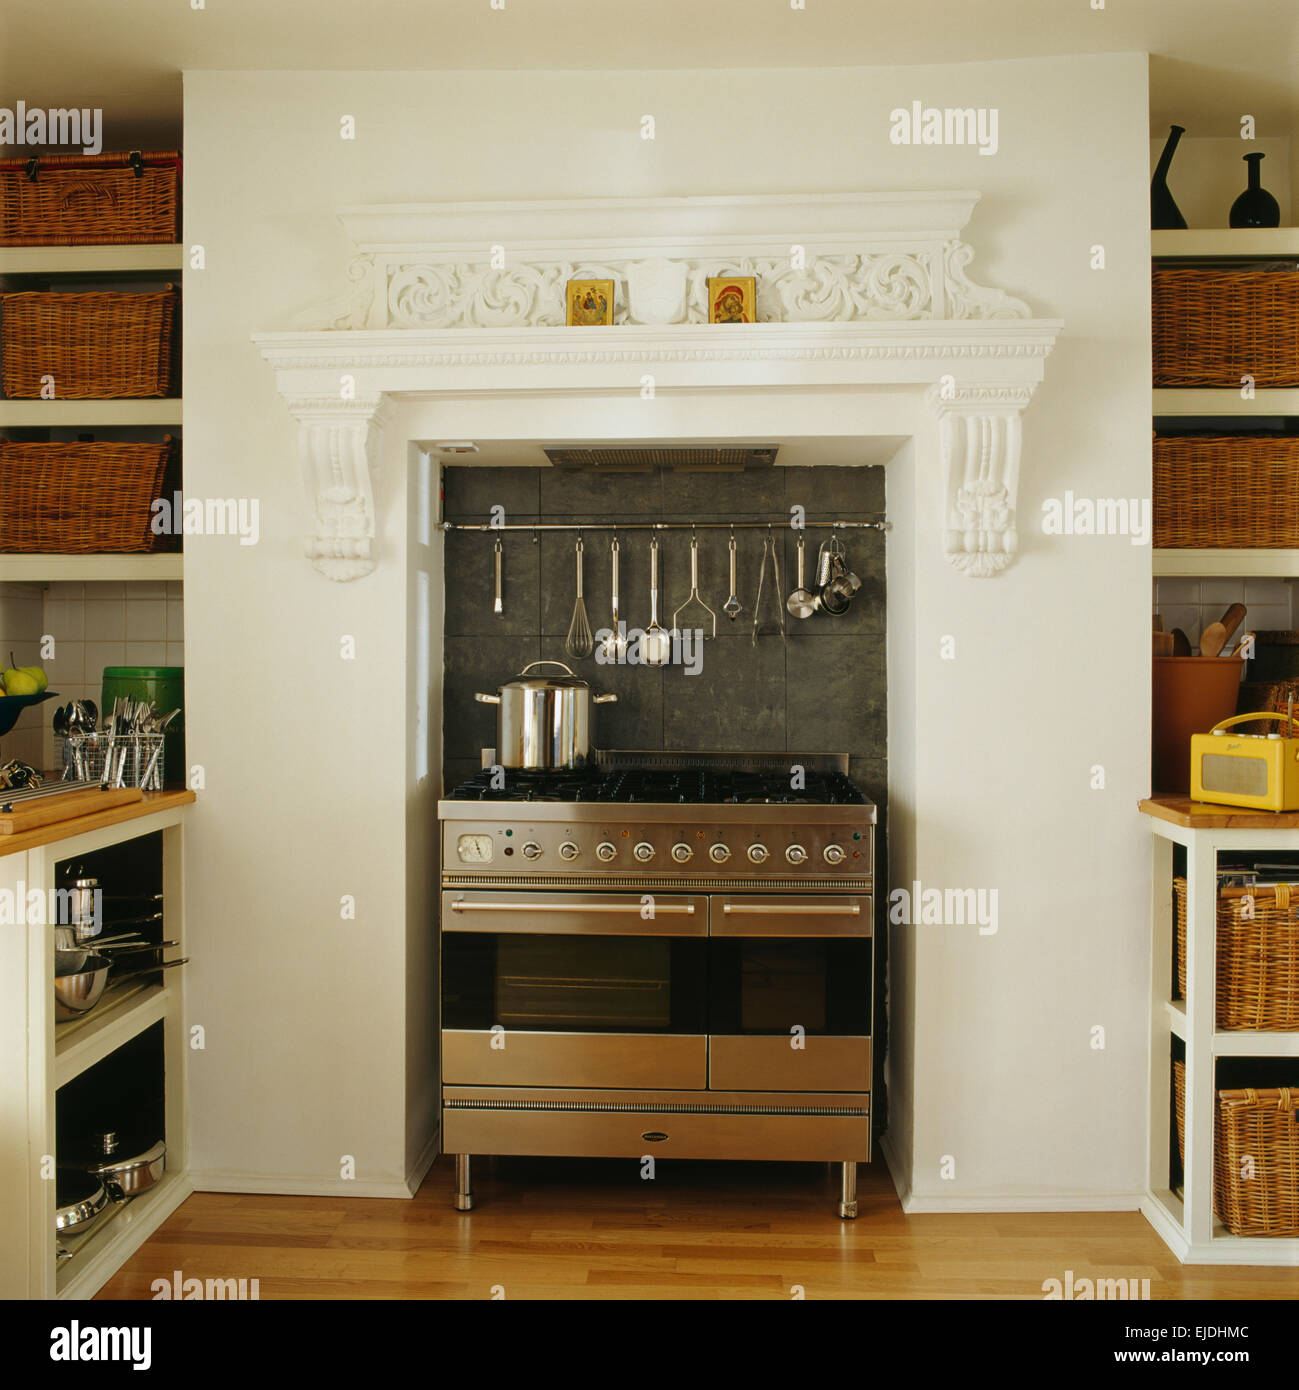 Cocina Completa Con Muebles De Madera Y Electrodomésticos Inoxidables  Imagen de archivo - Imagen de casa, horno: 241631535